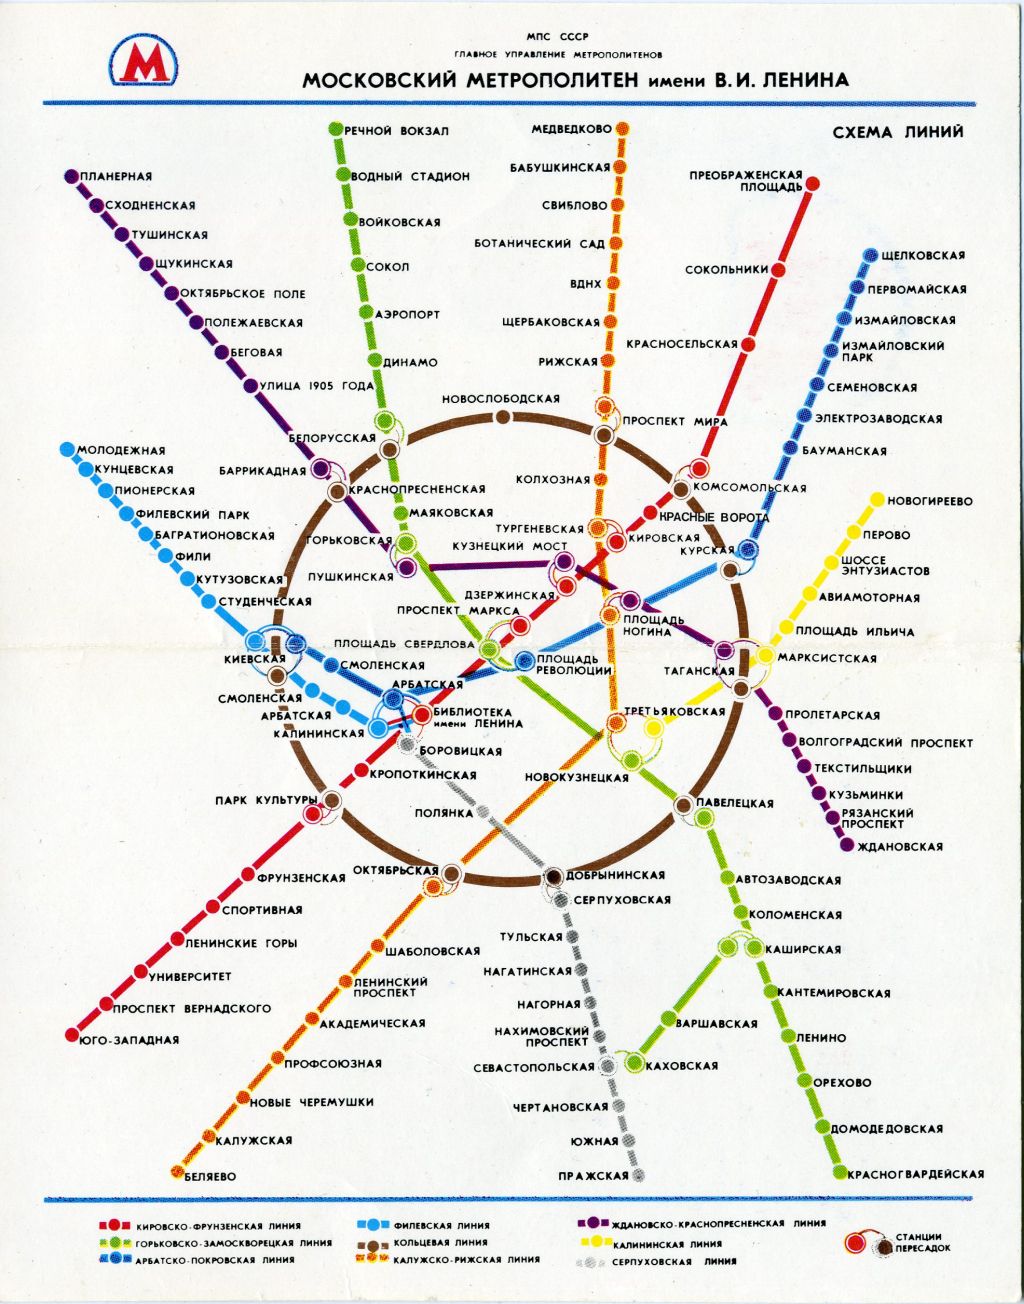 Карта метро москвы хамовники